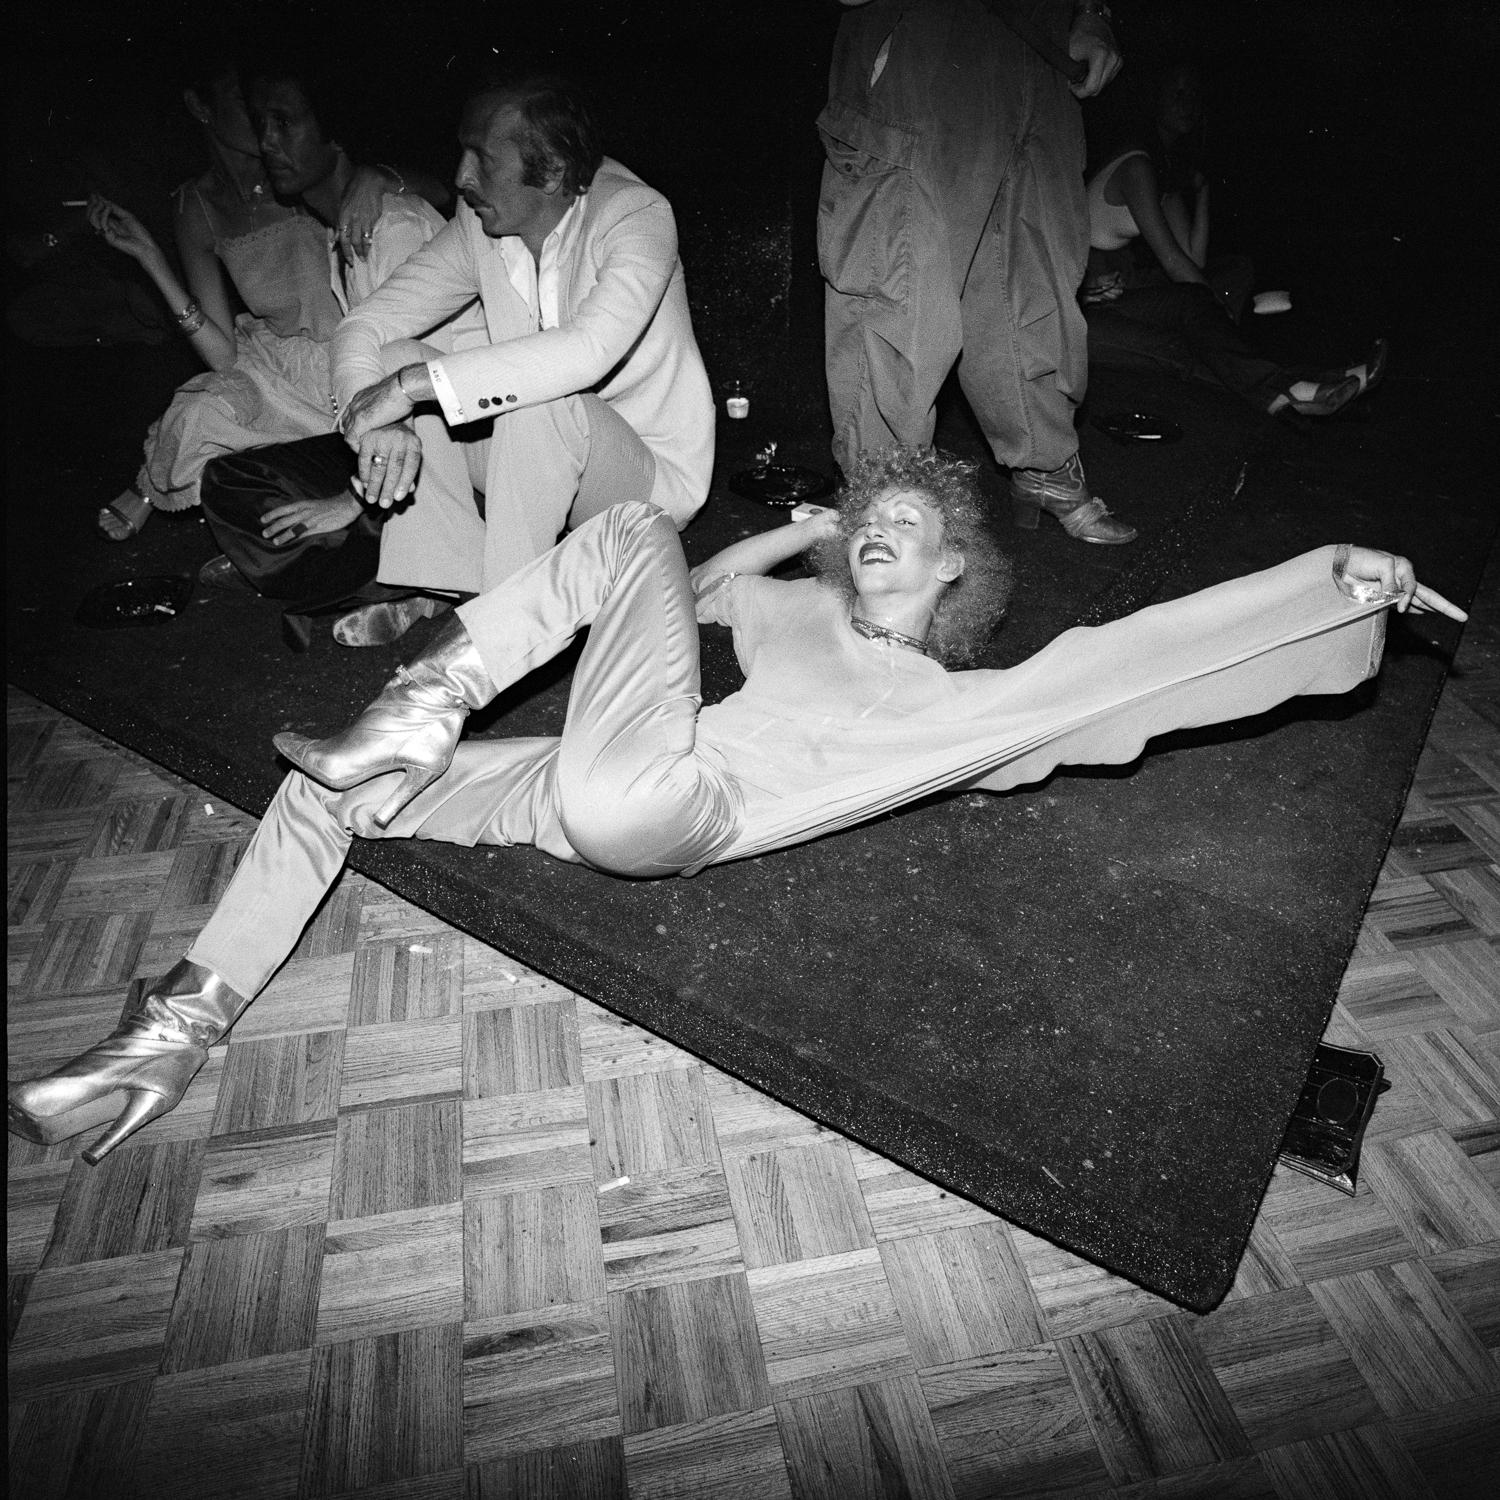 Nicoles silberne Stiefel auf den Boden gestreckt, Studio 54 – Photograph von Meryl Meisler